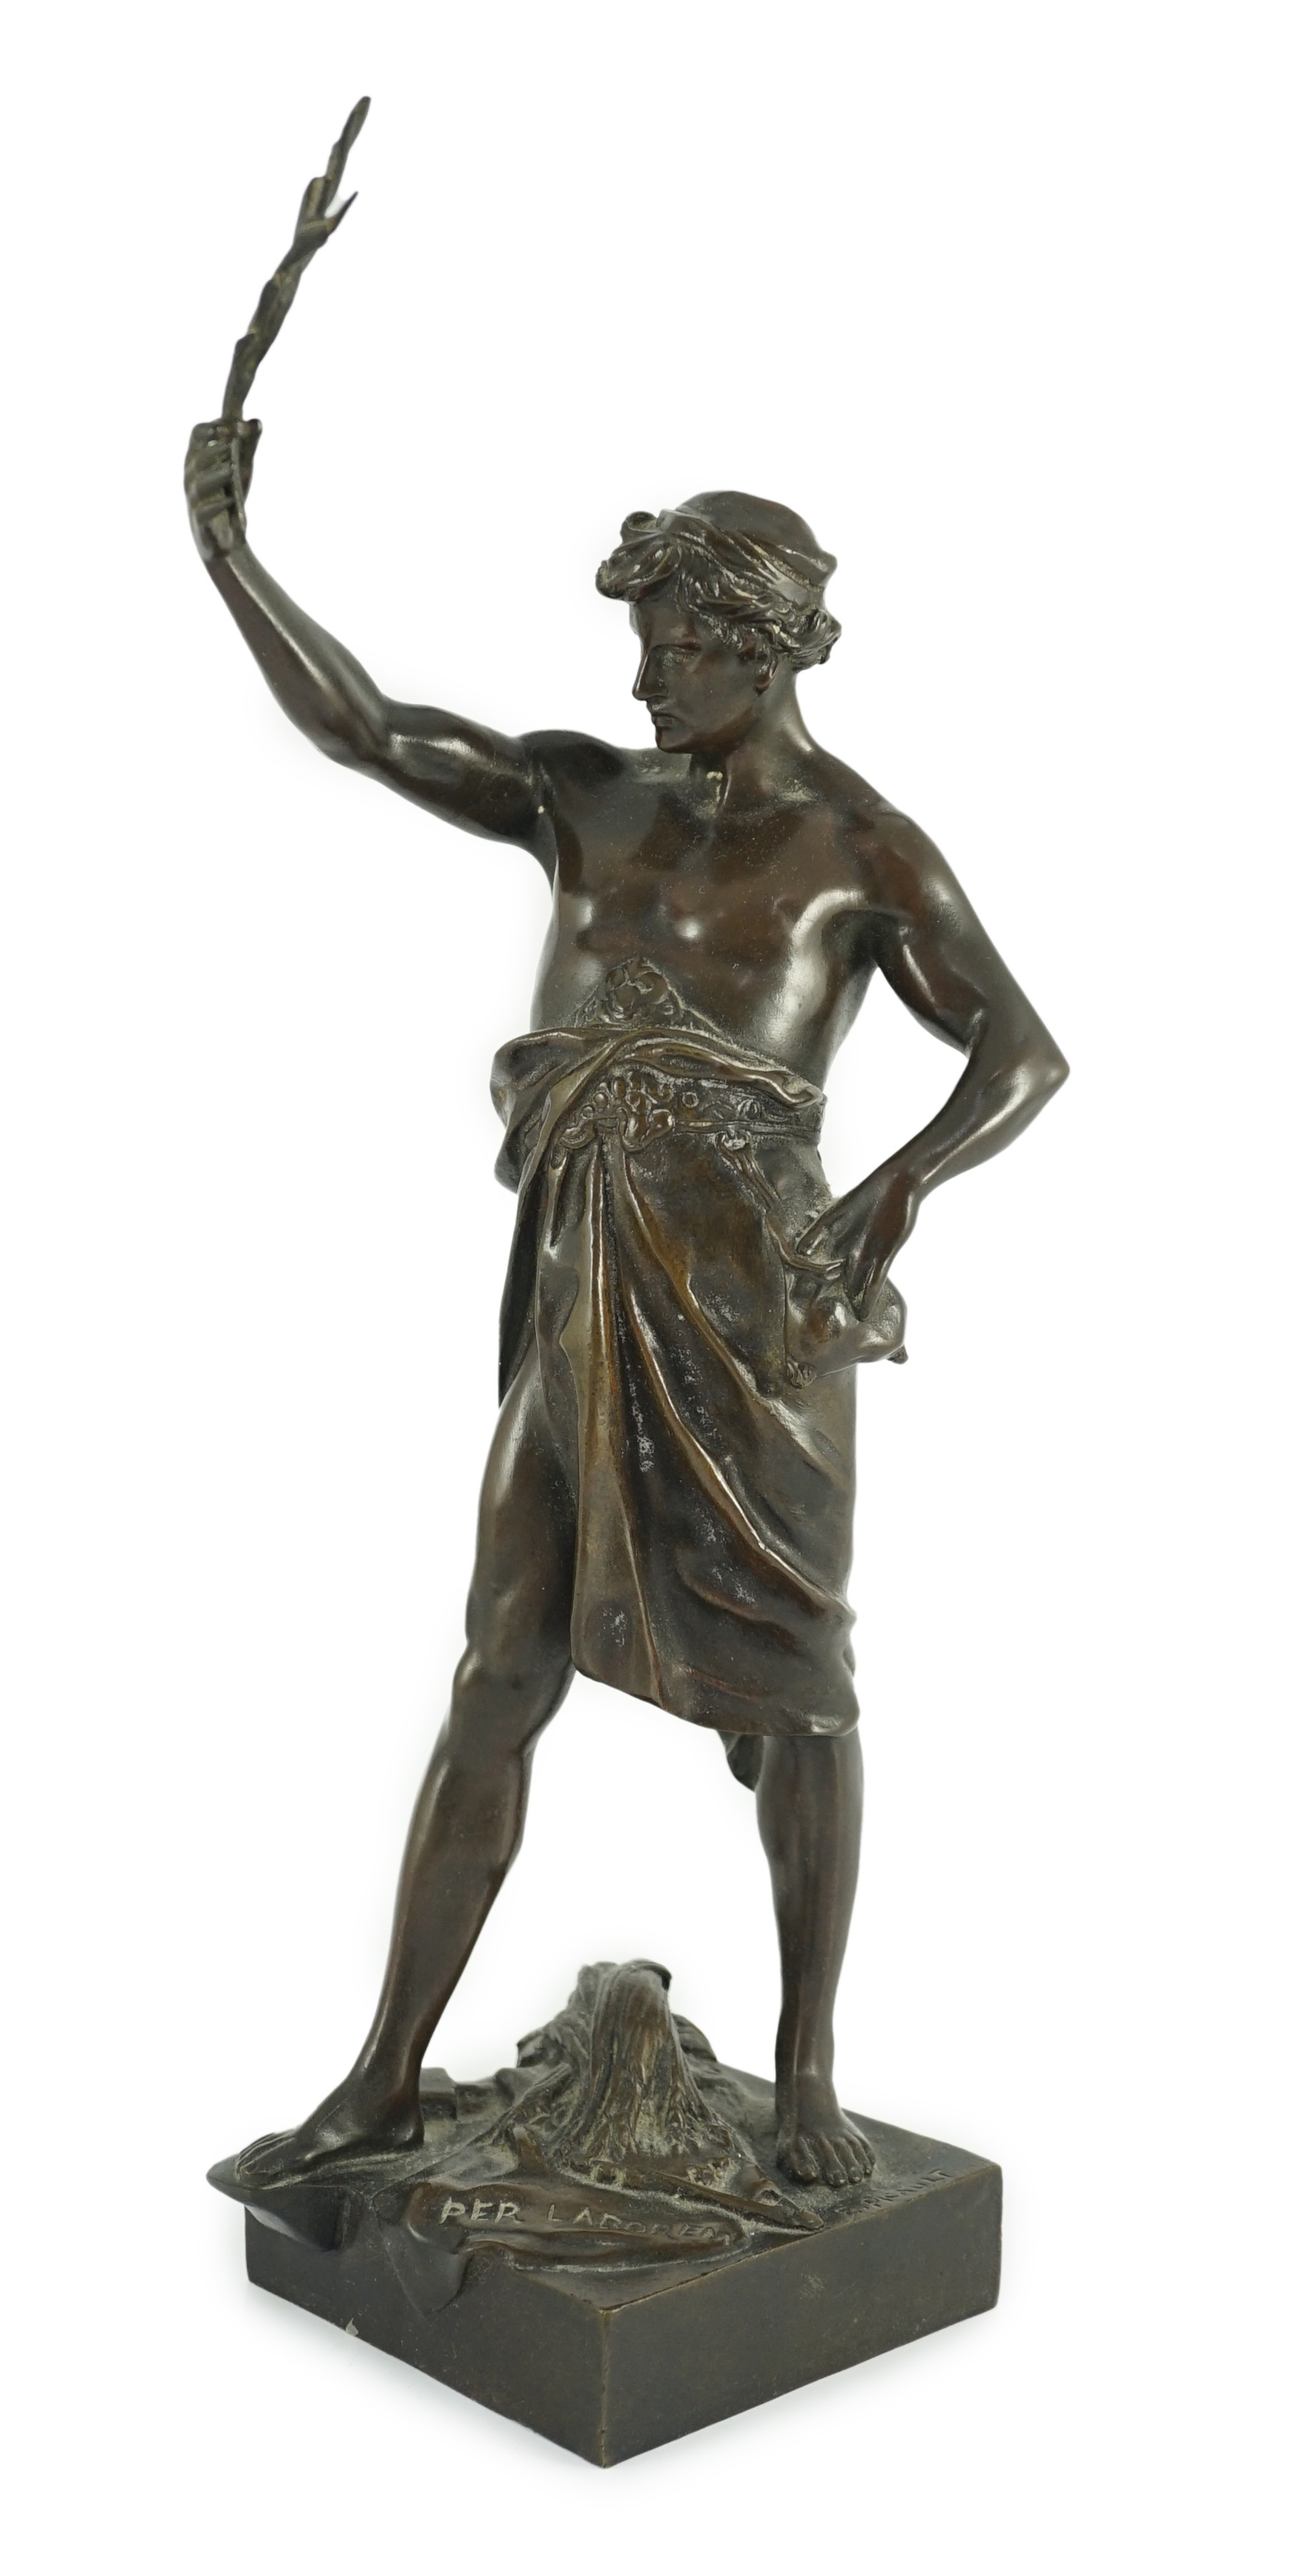 Emile Louis Picault (1833-1915). A French bronze figure 'Per Laborem' modelled as a classical athlete holding aloft a laurel sprig, 34cm high                                                                               